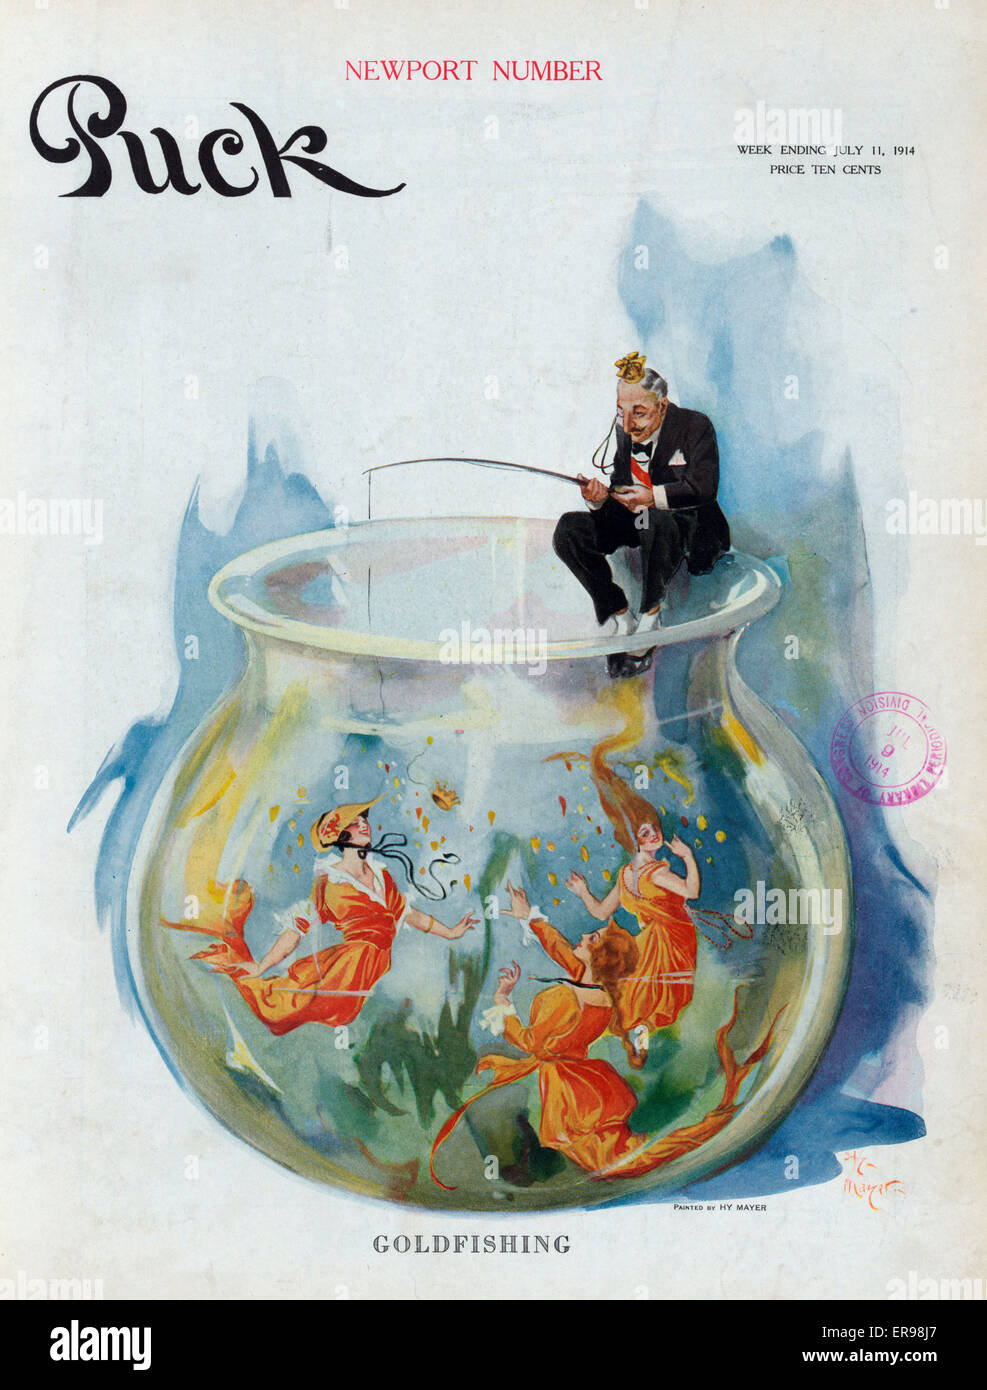 Goldfishing. L'illustration montre un homme bien habillé avec une couronne sur la tête, assise sur le bord d'un aquarium se balançant une couronne d'un pôle de pêche entre trois belle jeune femme comme poissons rouges. Juillet 1914 Date 11. Banque D'Images